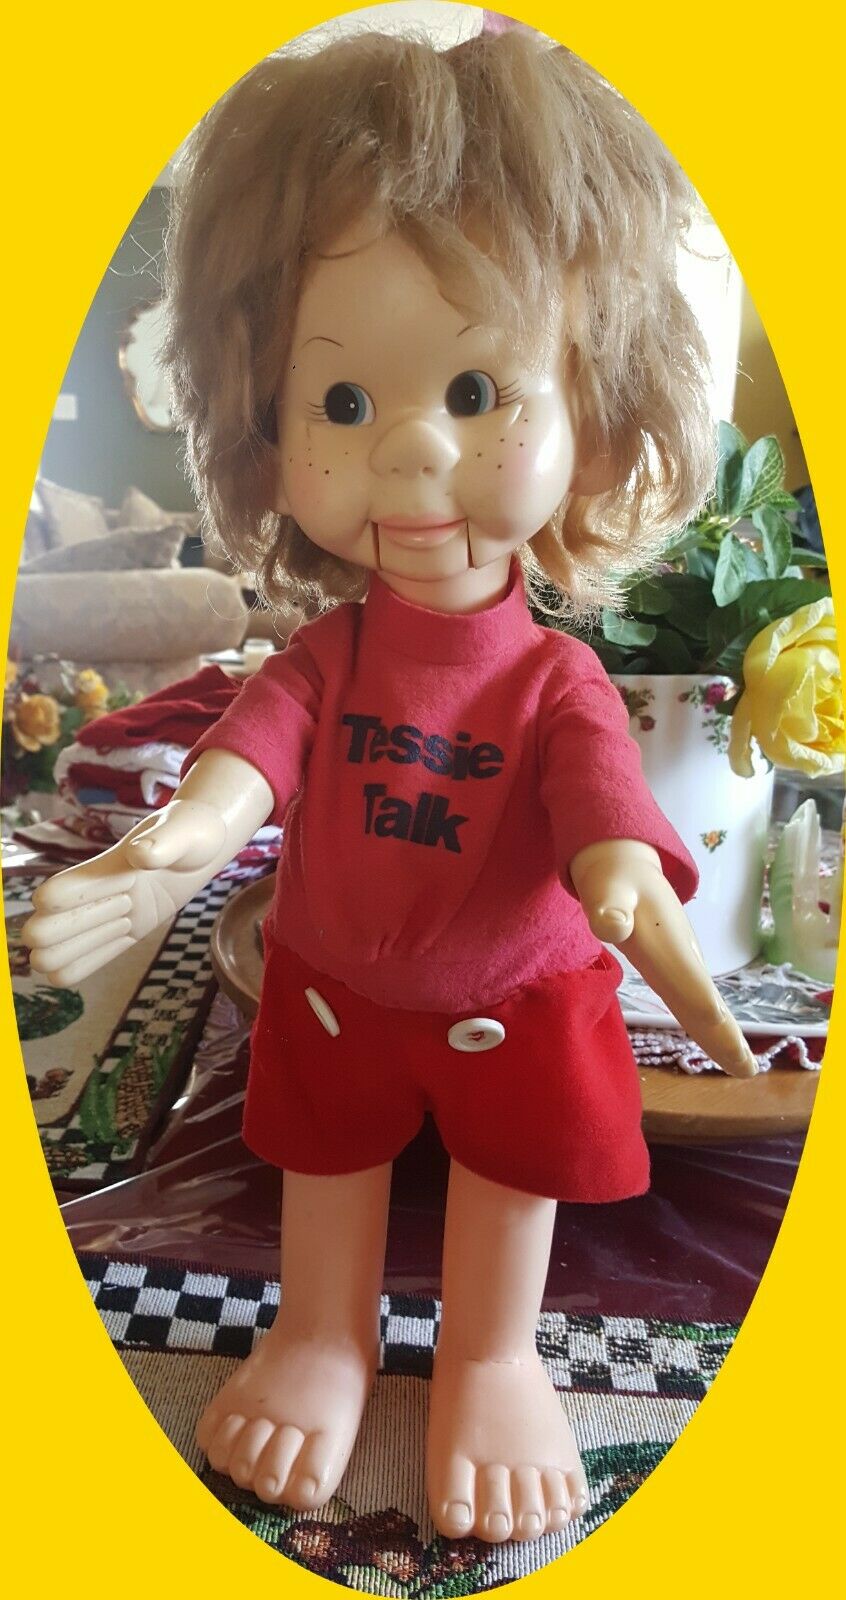 Doll Tessie Talk Ventriloquist 1974 17" Horsman Rare/unique Red Outfit Vintage